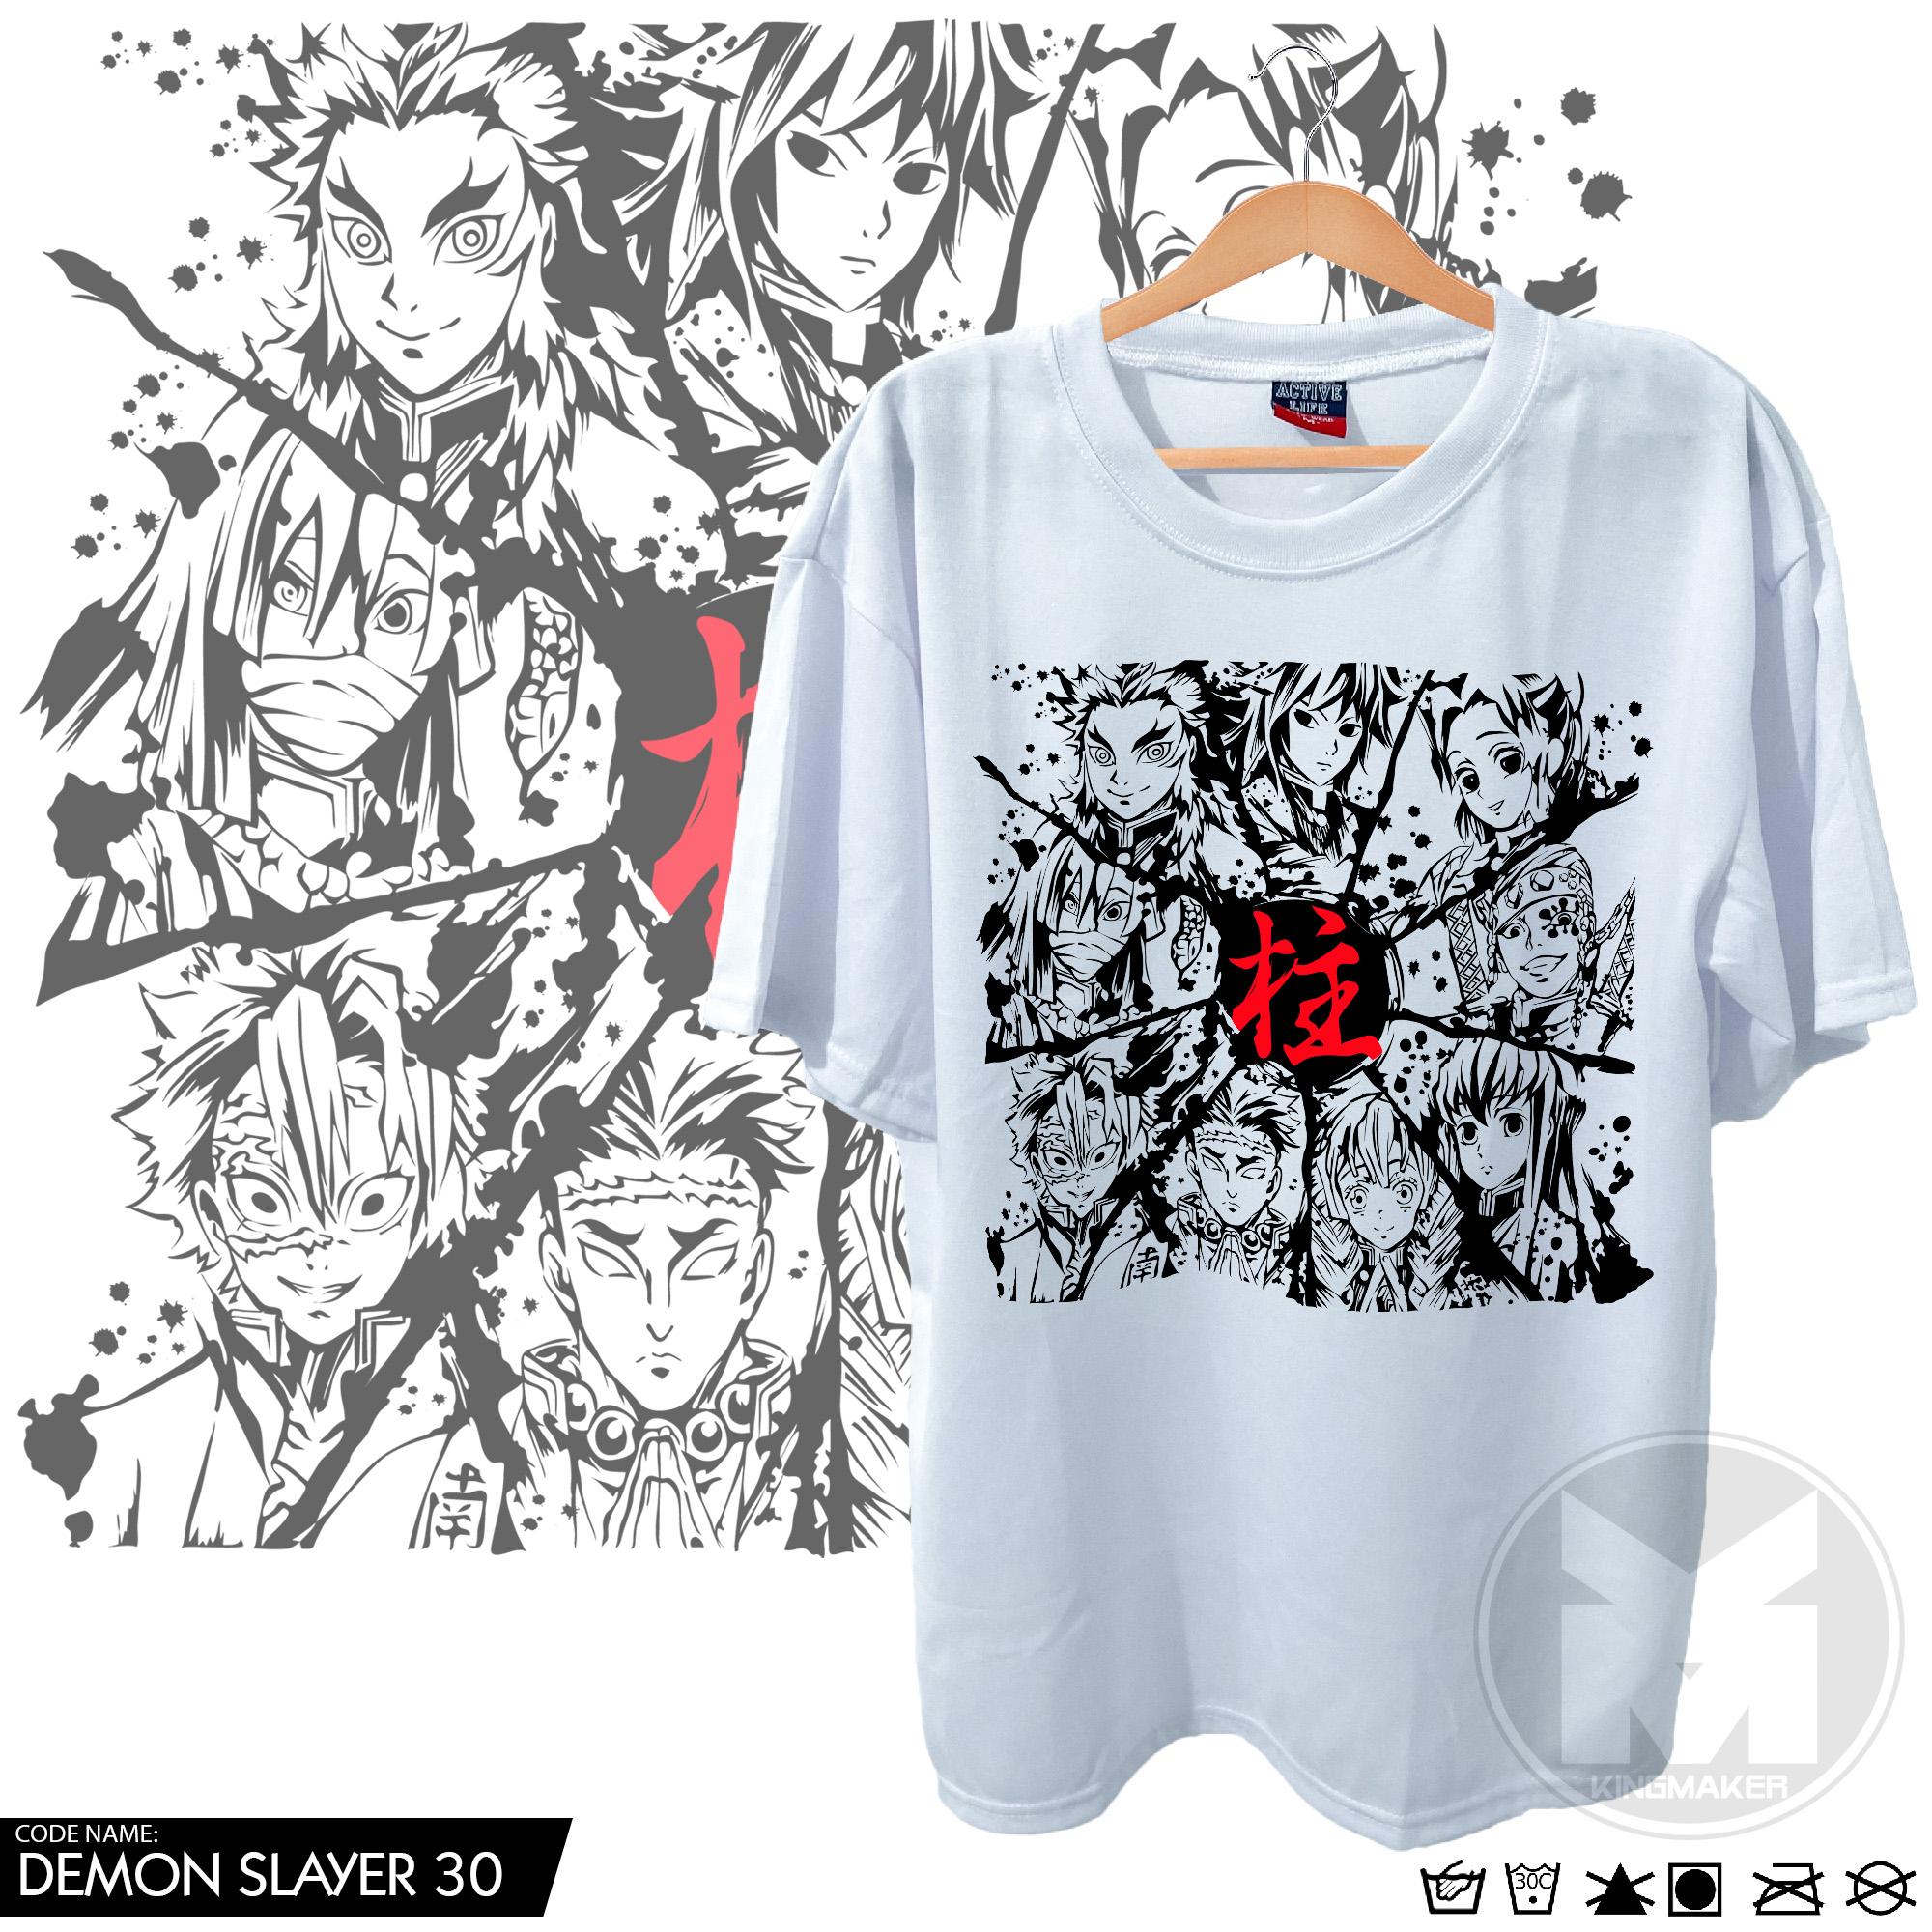 kawaii Muichiro Tokito T Shirt Demon Slayer Anime Clothing Manga Japanese  Tee | eBay